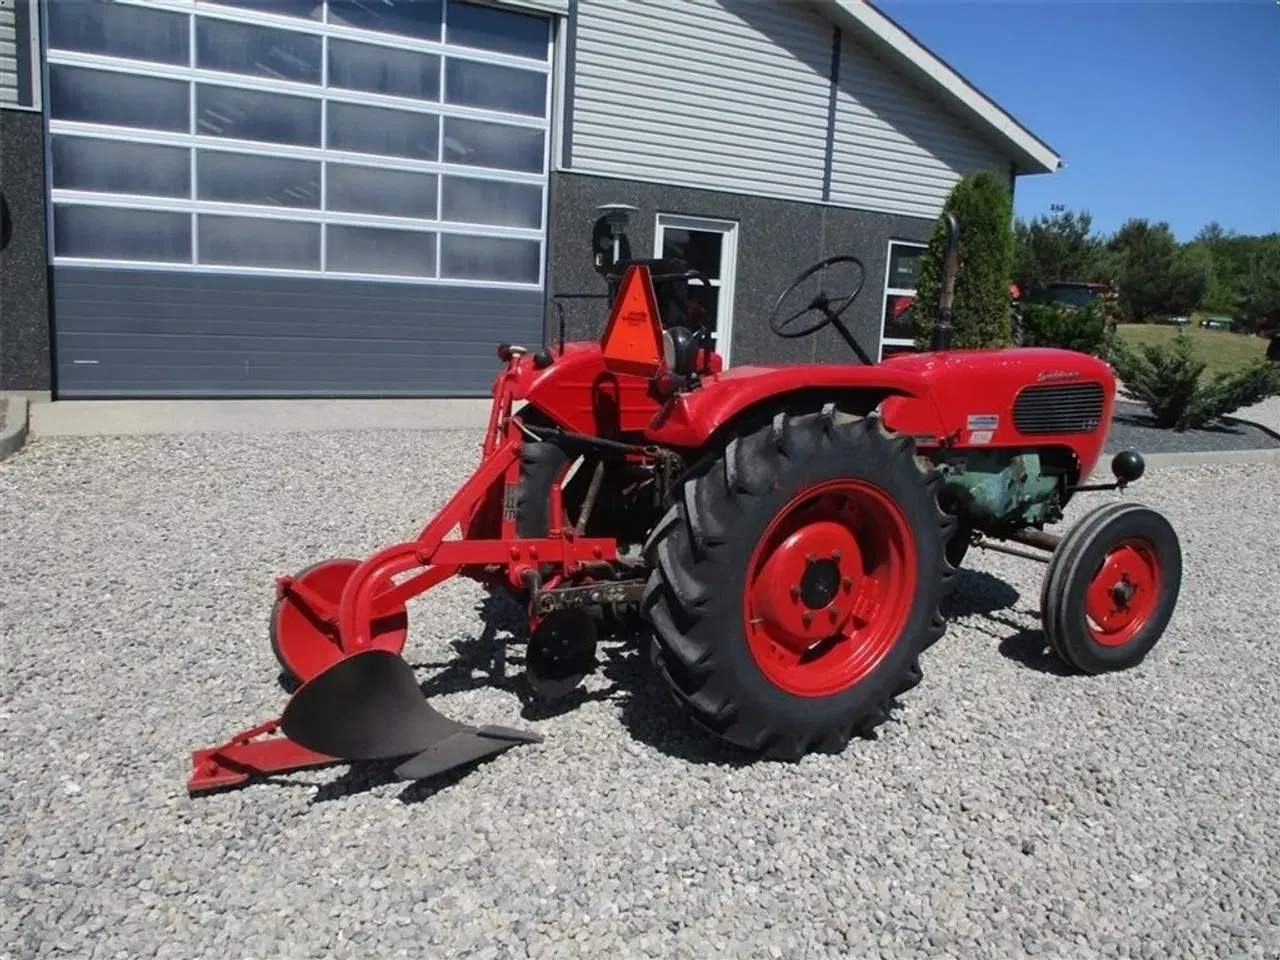 Billede 9 - - - - Komplet sæt med traktor og Plov. Güldner 17 HK traktor og 1furet Langeskov plov. Prisen for sættet komplet.